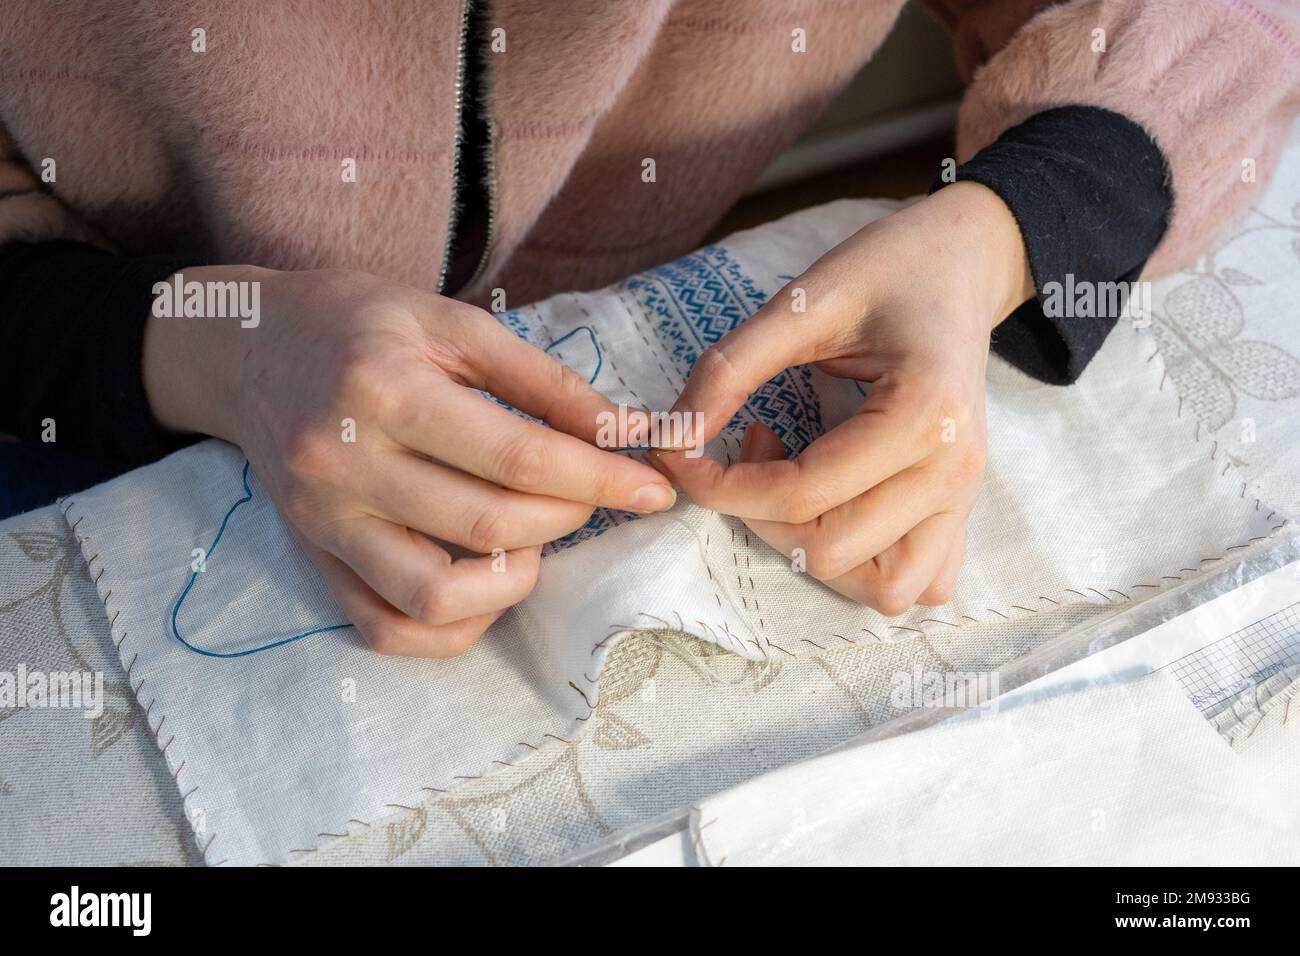 Primo piano delle mani di una donna che cucia una maglietta nazionale Ucraina ricamata Foto Stock